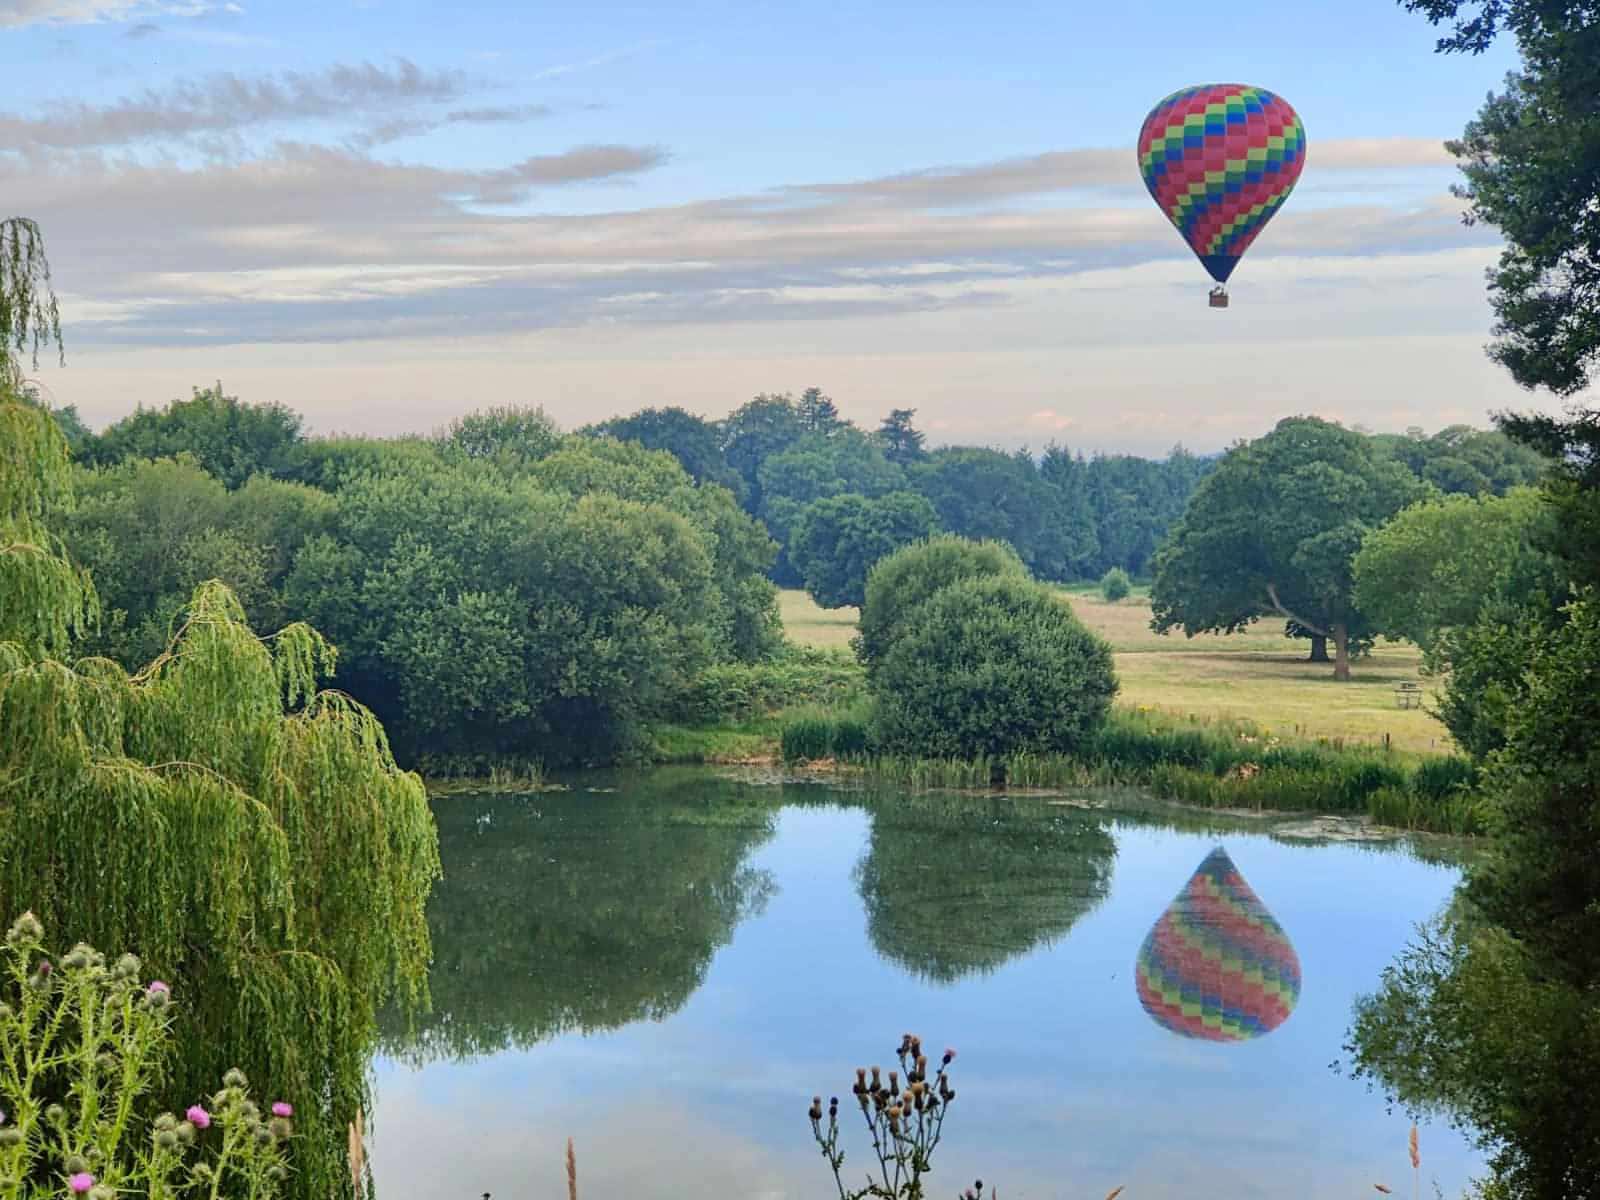 Hot Air Balloon Rides - Fly Away Ballooning